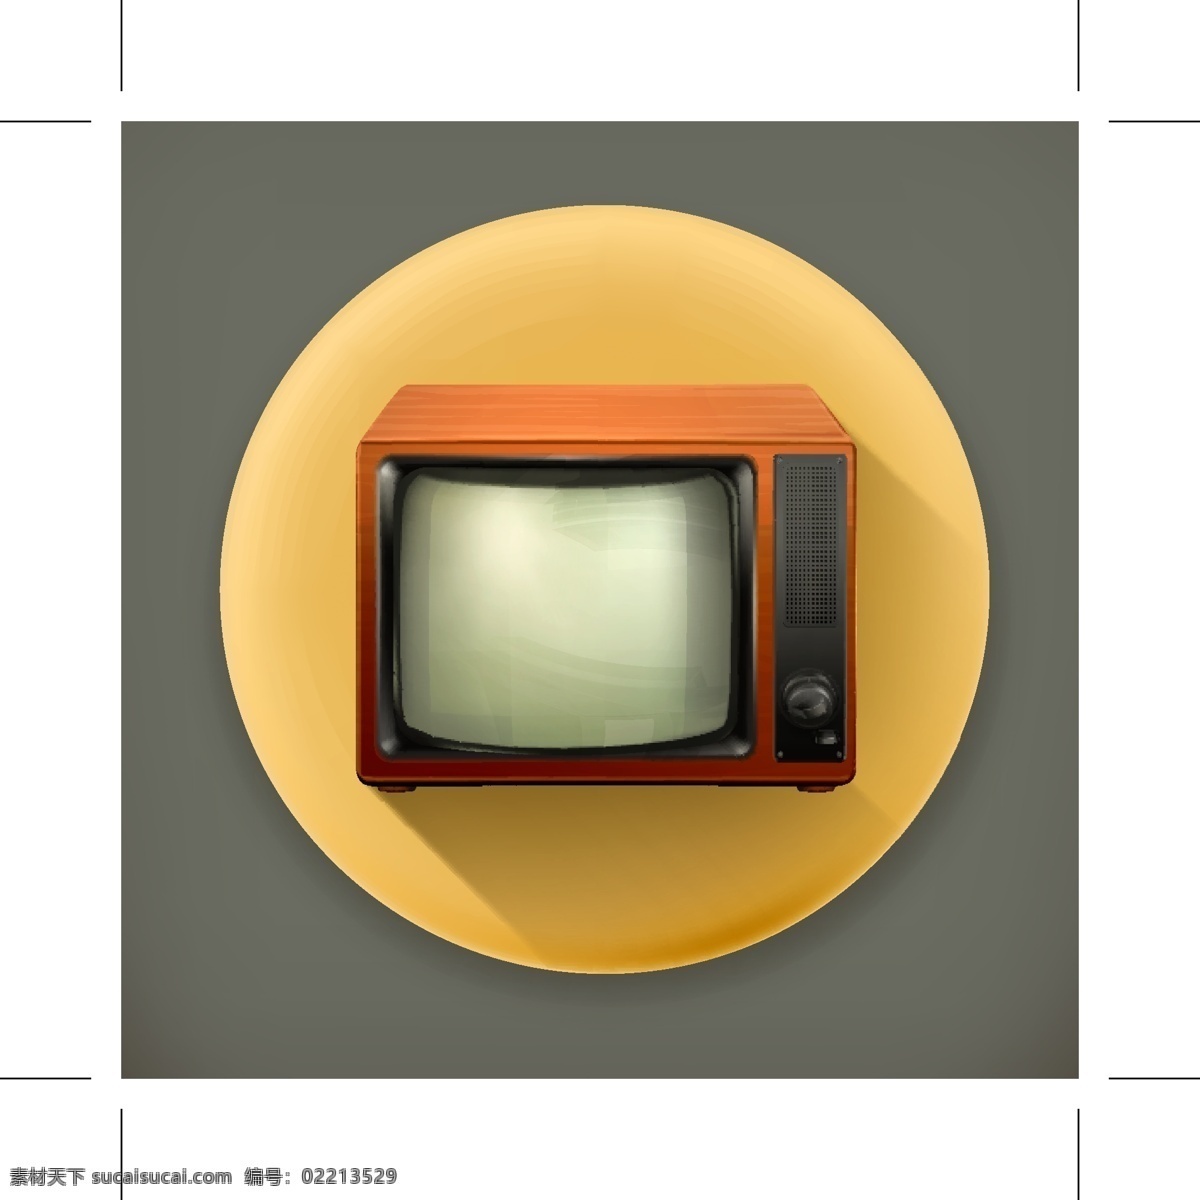 古老 电视 icon 图标 logo 电视机 小标志 小图标 古老电视 黑白电视 矢量图 其他矢量图